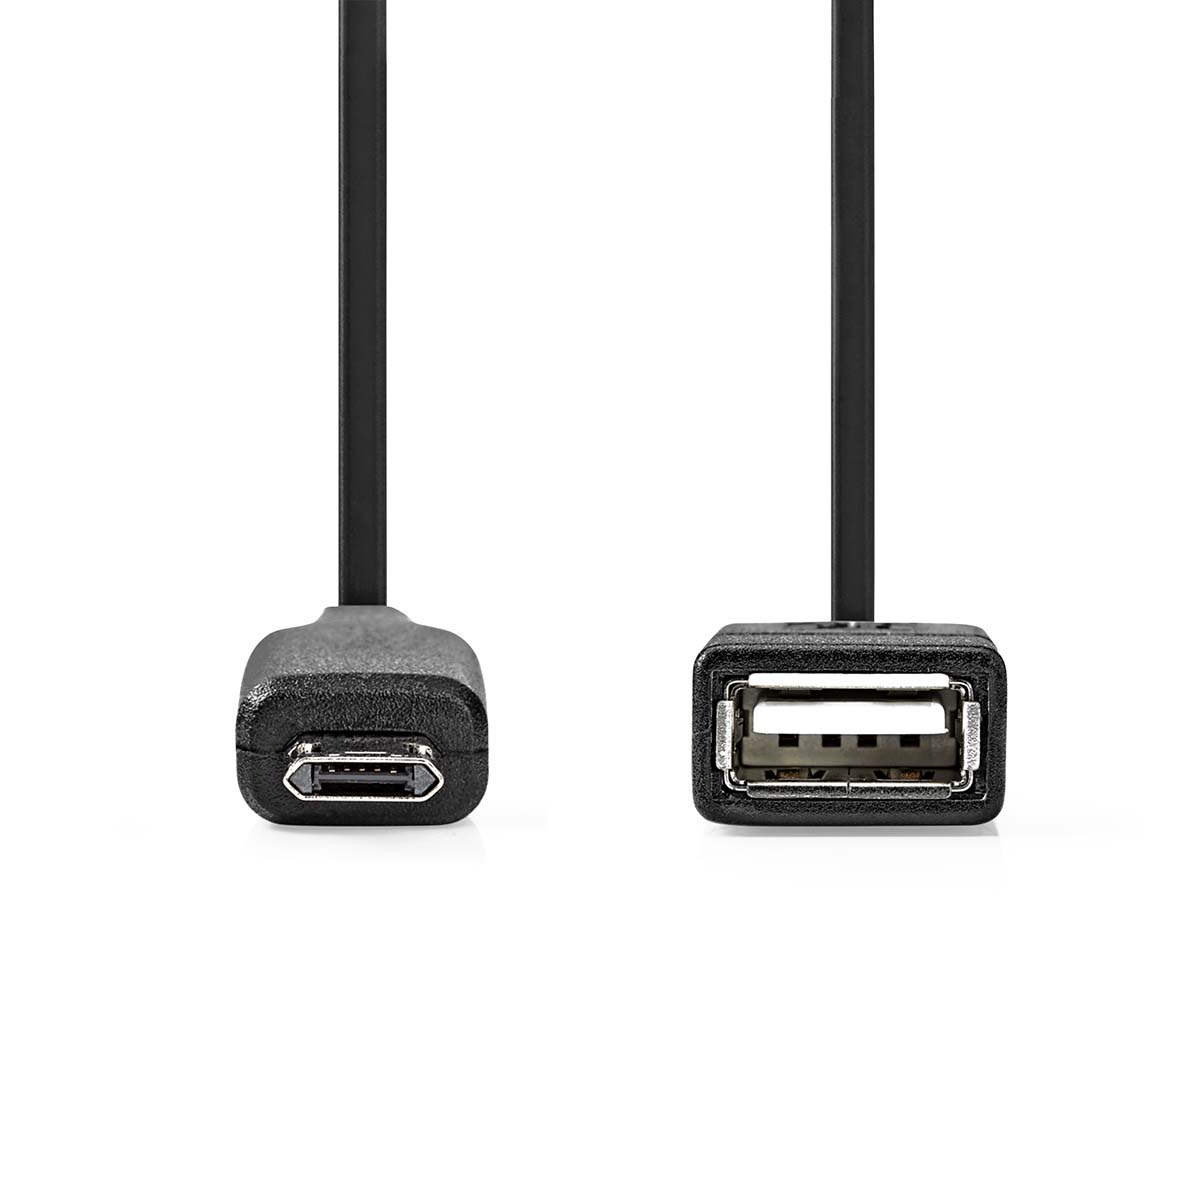 NEDIS CCGP60515BK02 USB Micro-B Adapter